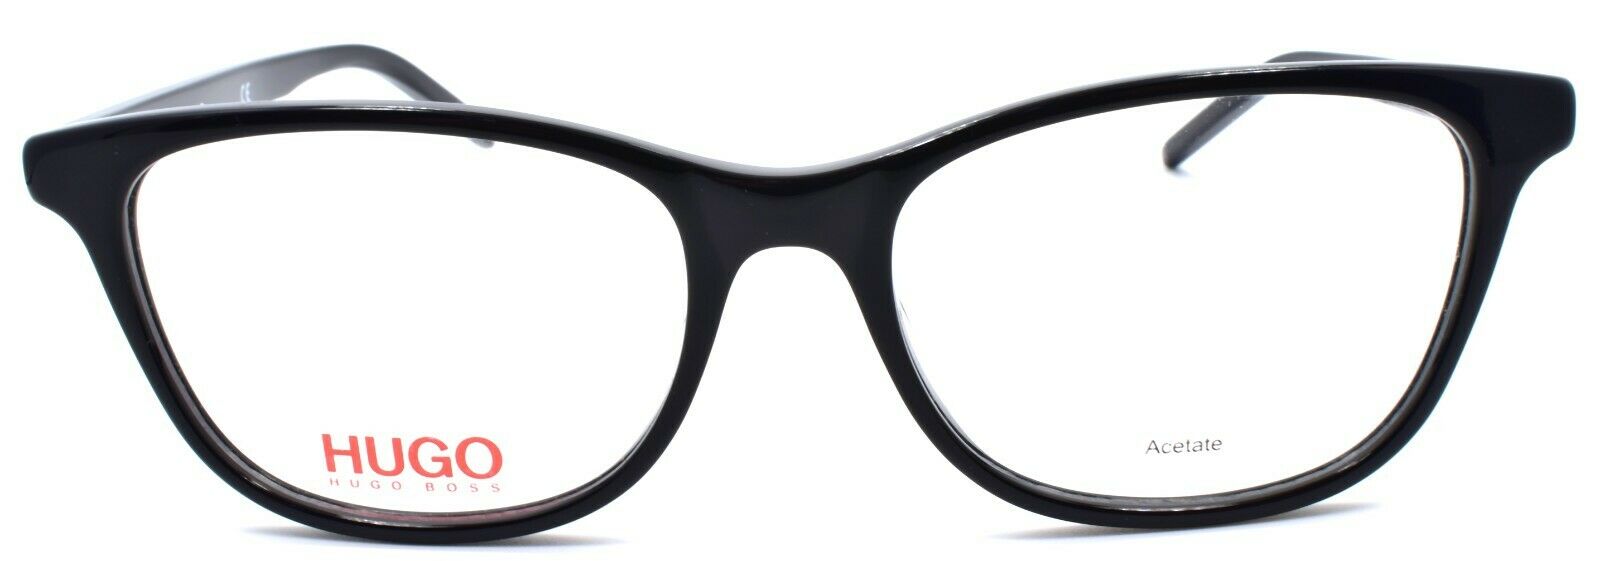 2-Hugo by Hugo Boss HG 1041 807 Women's Eyeglasses Frames 52-17-140 Black-716736137322-IKSpecs